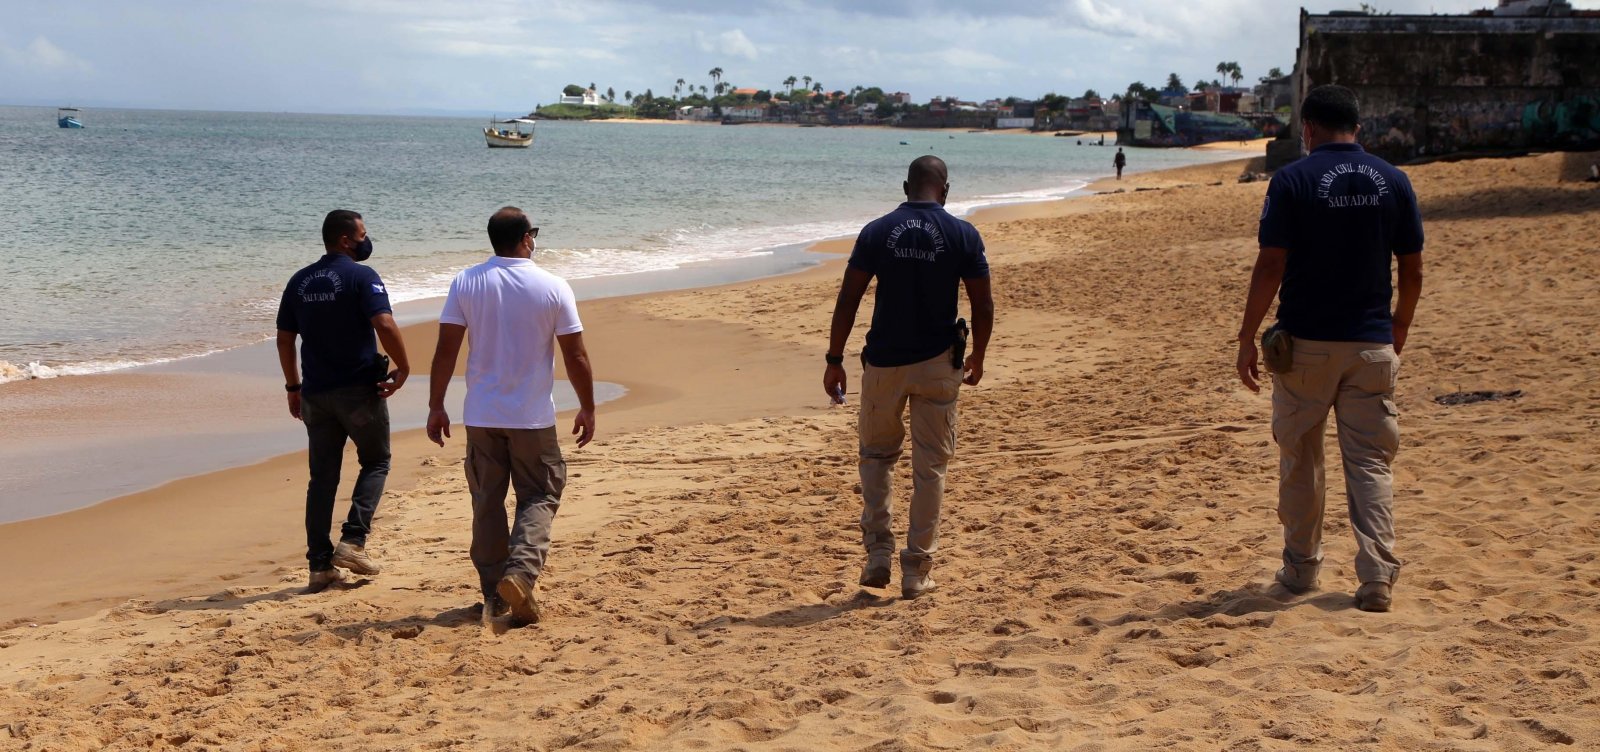 Prefeitura libera praias a partir desta segunda-feira; confira cronograma